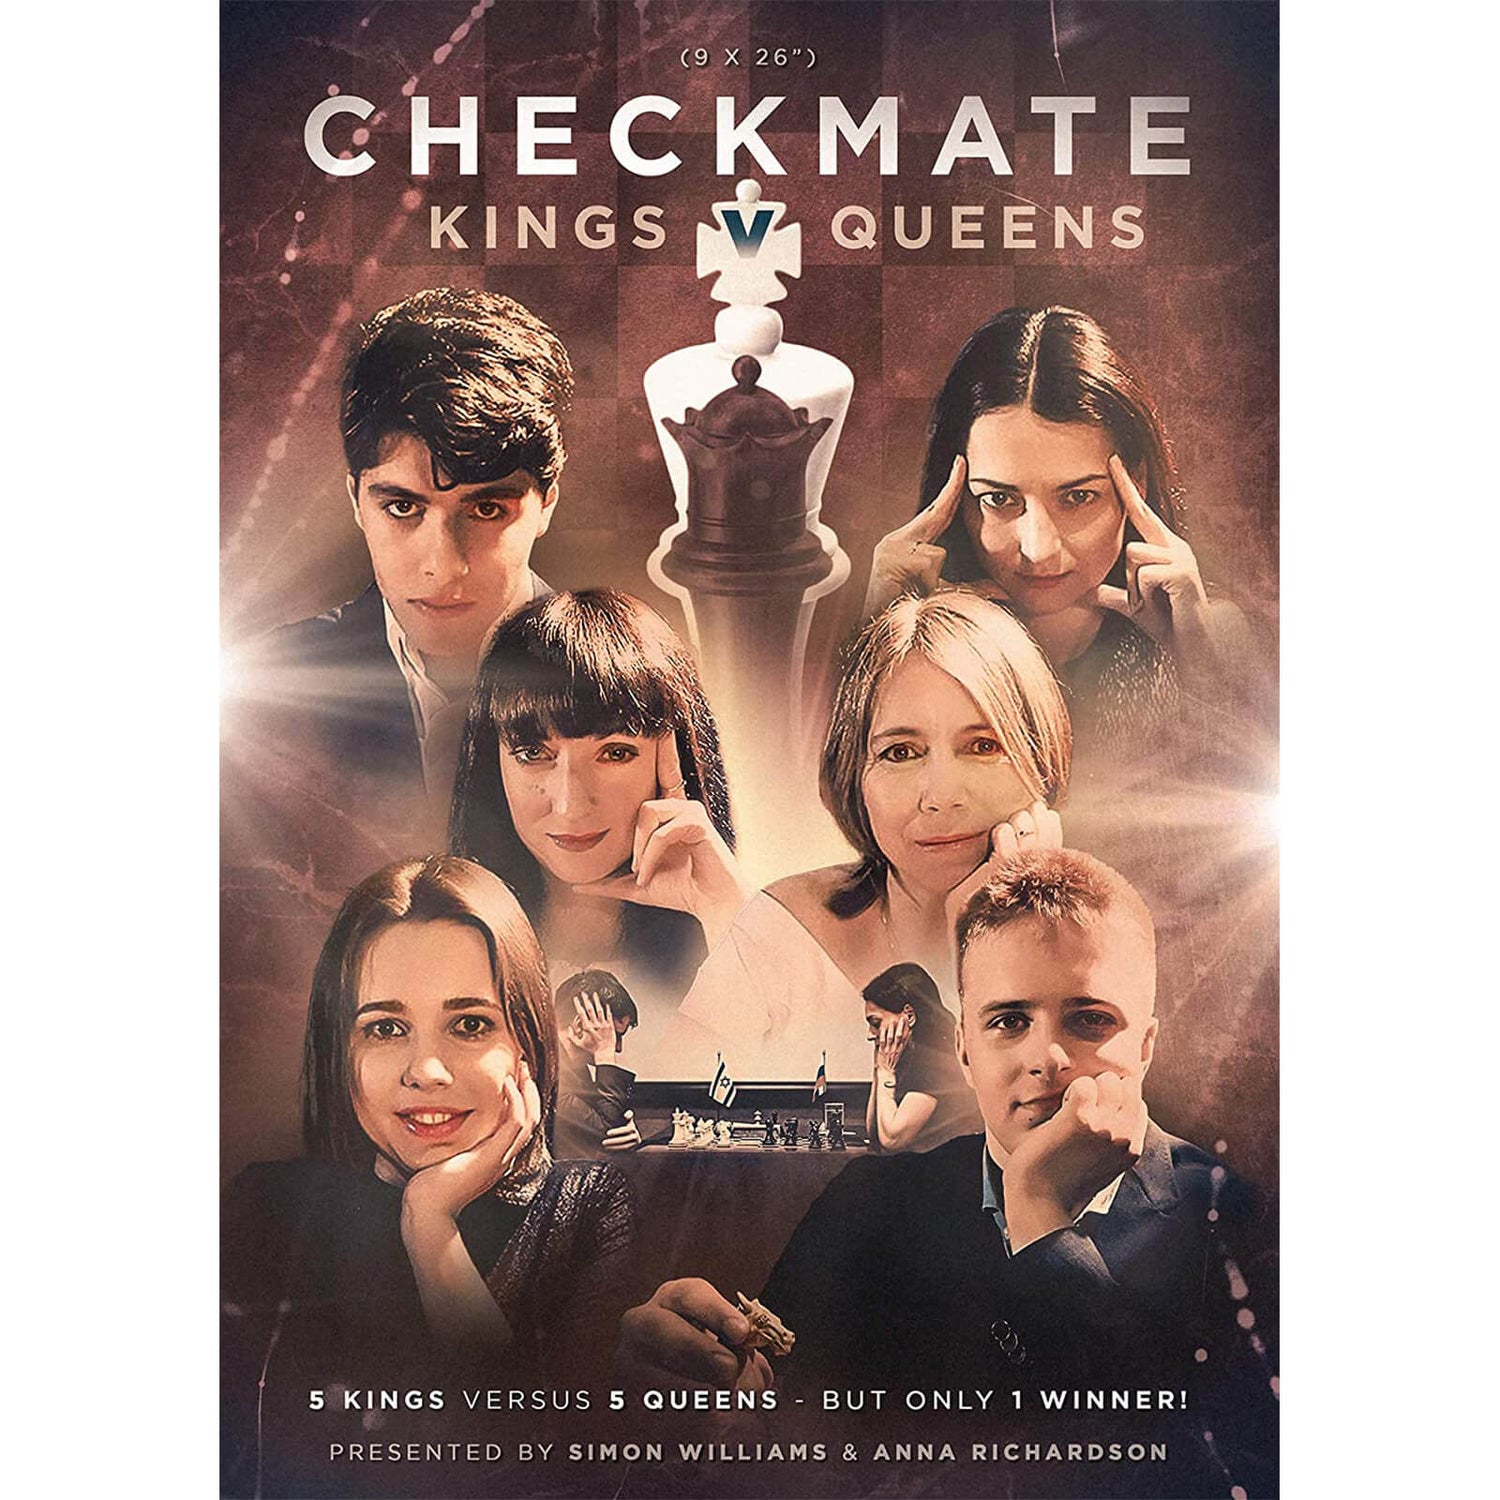 Checkmate - Kings versus Queens